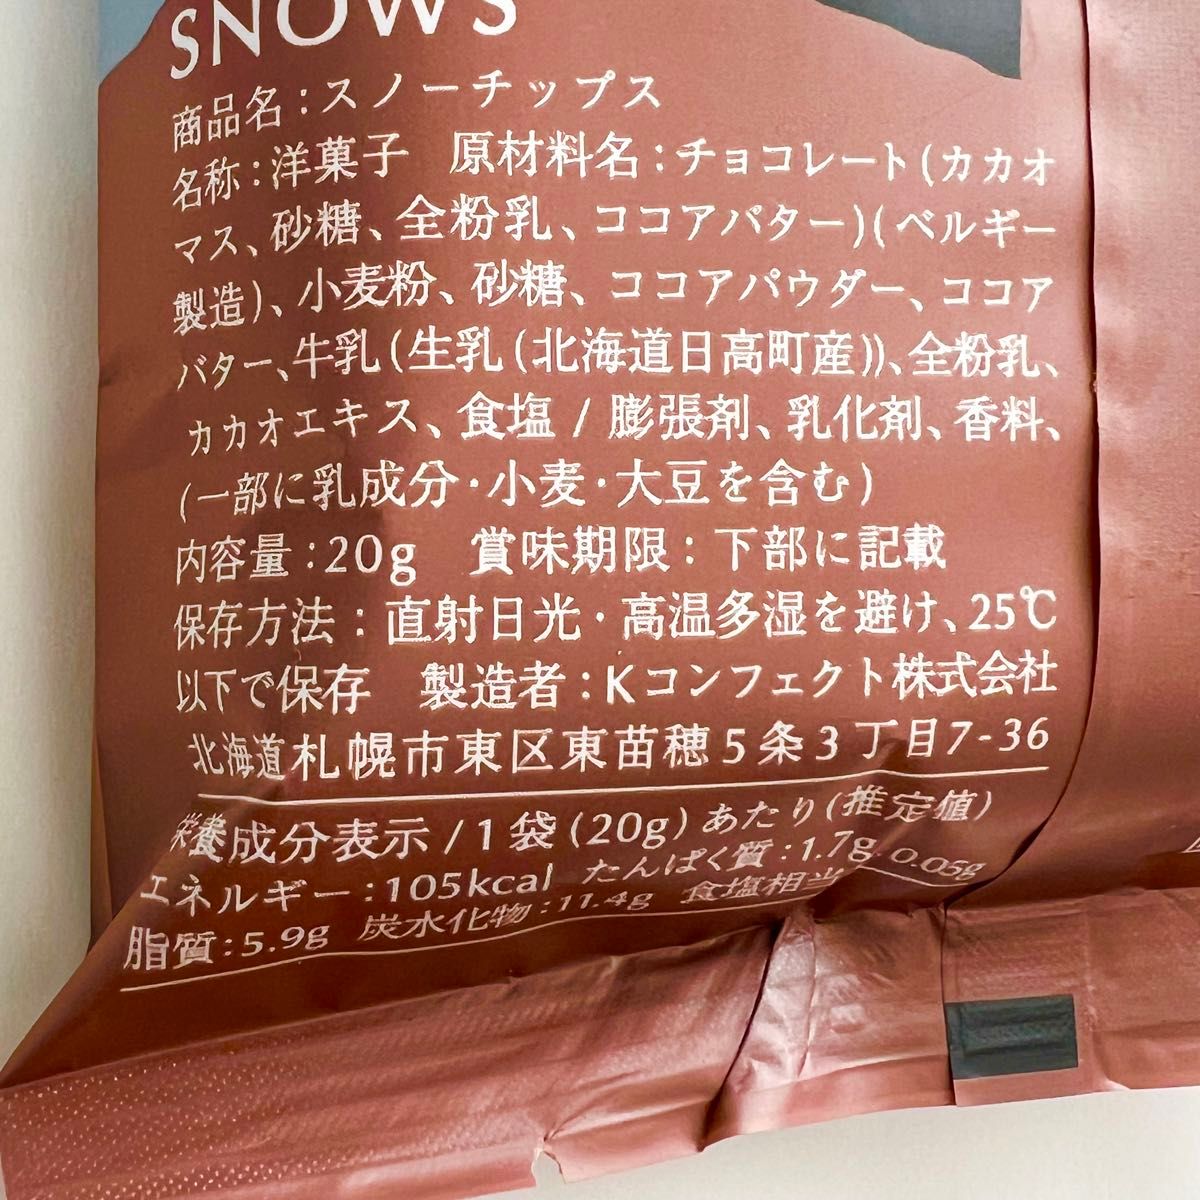 SNOWS★スノーチップス★2袋